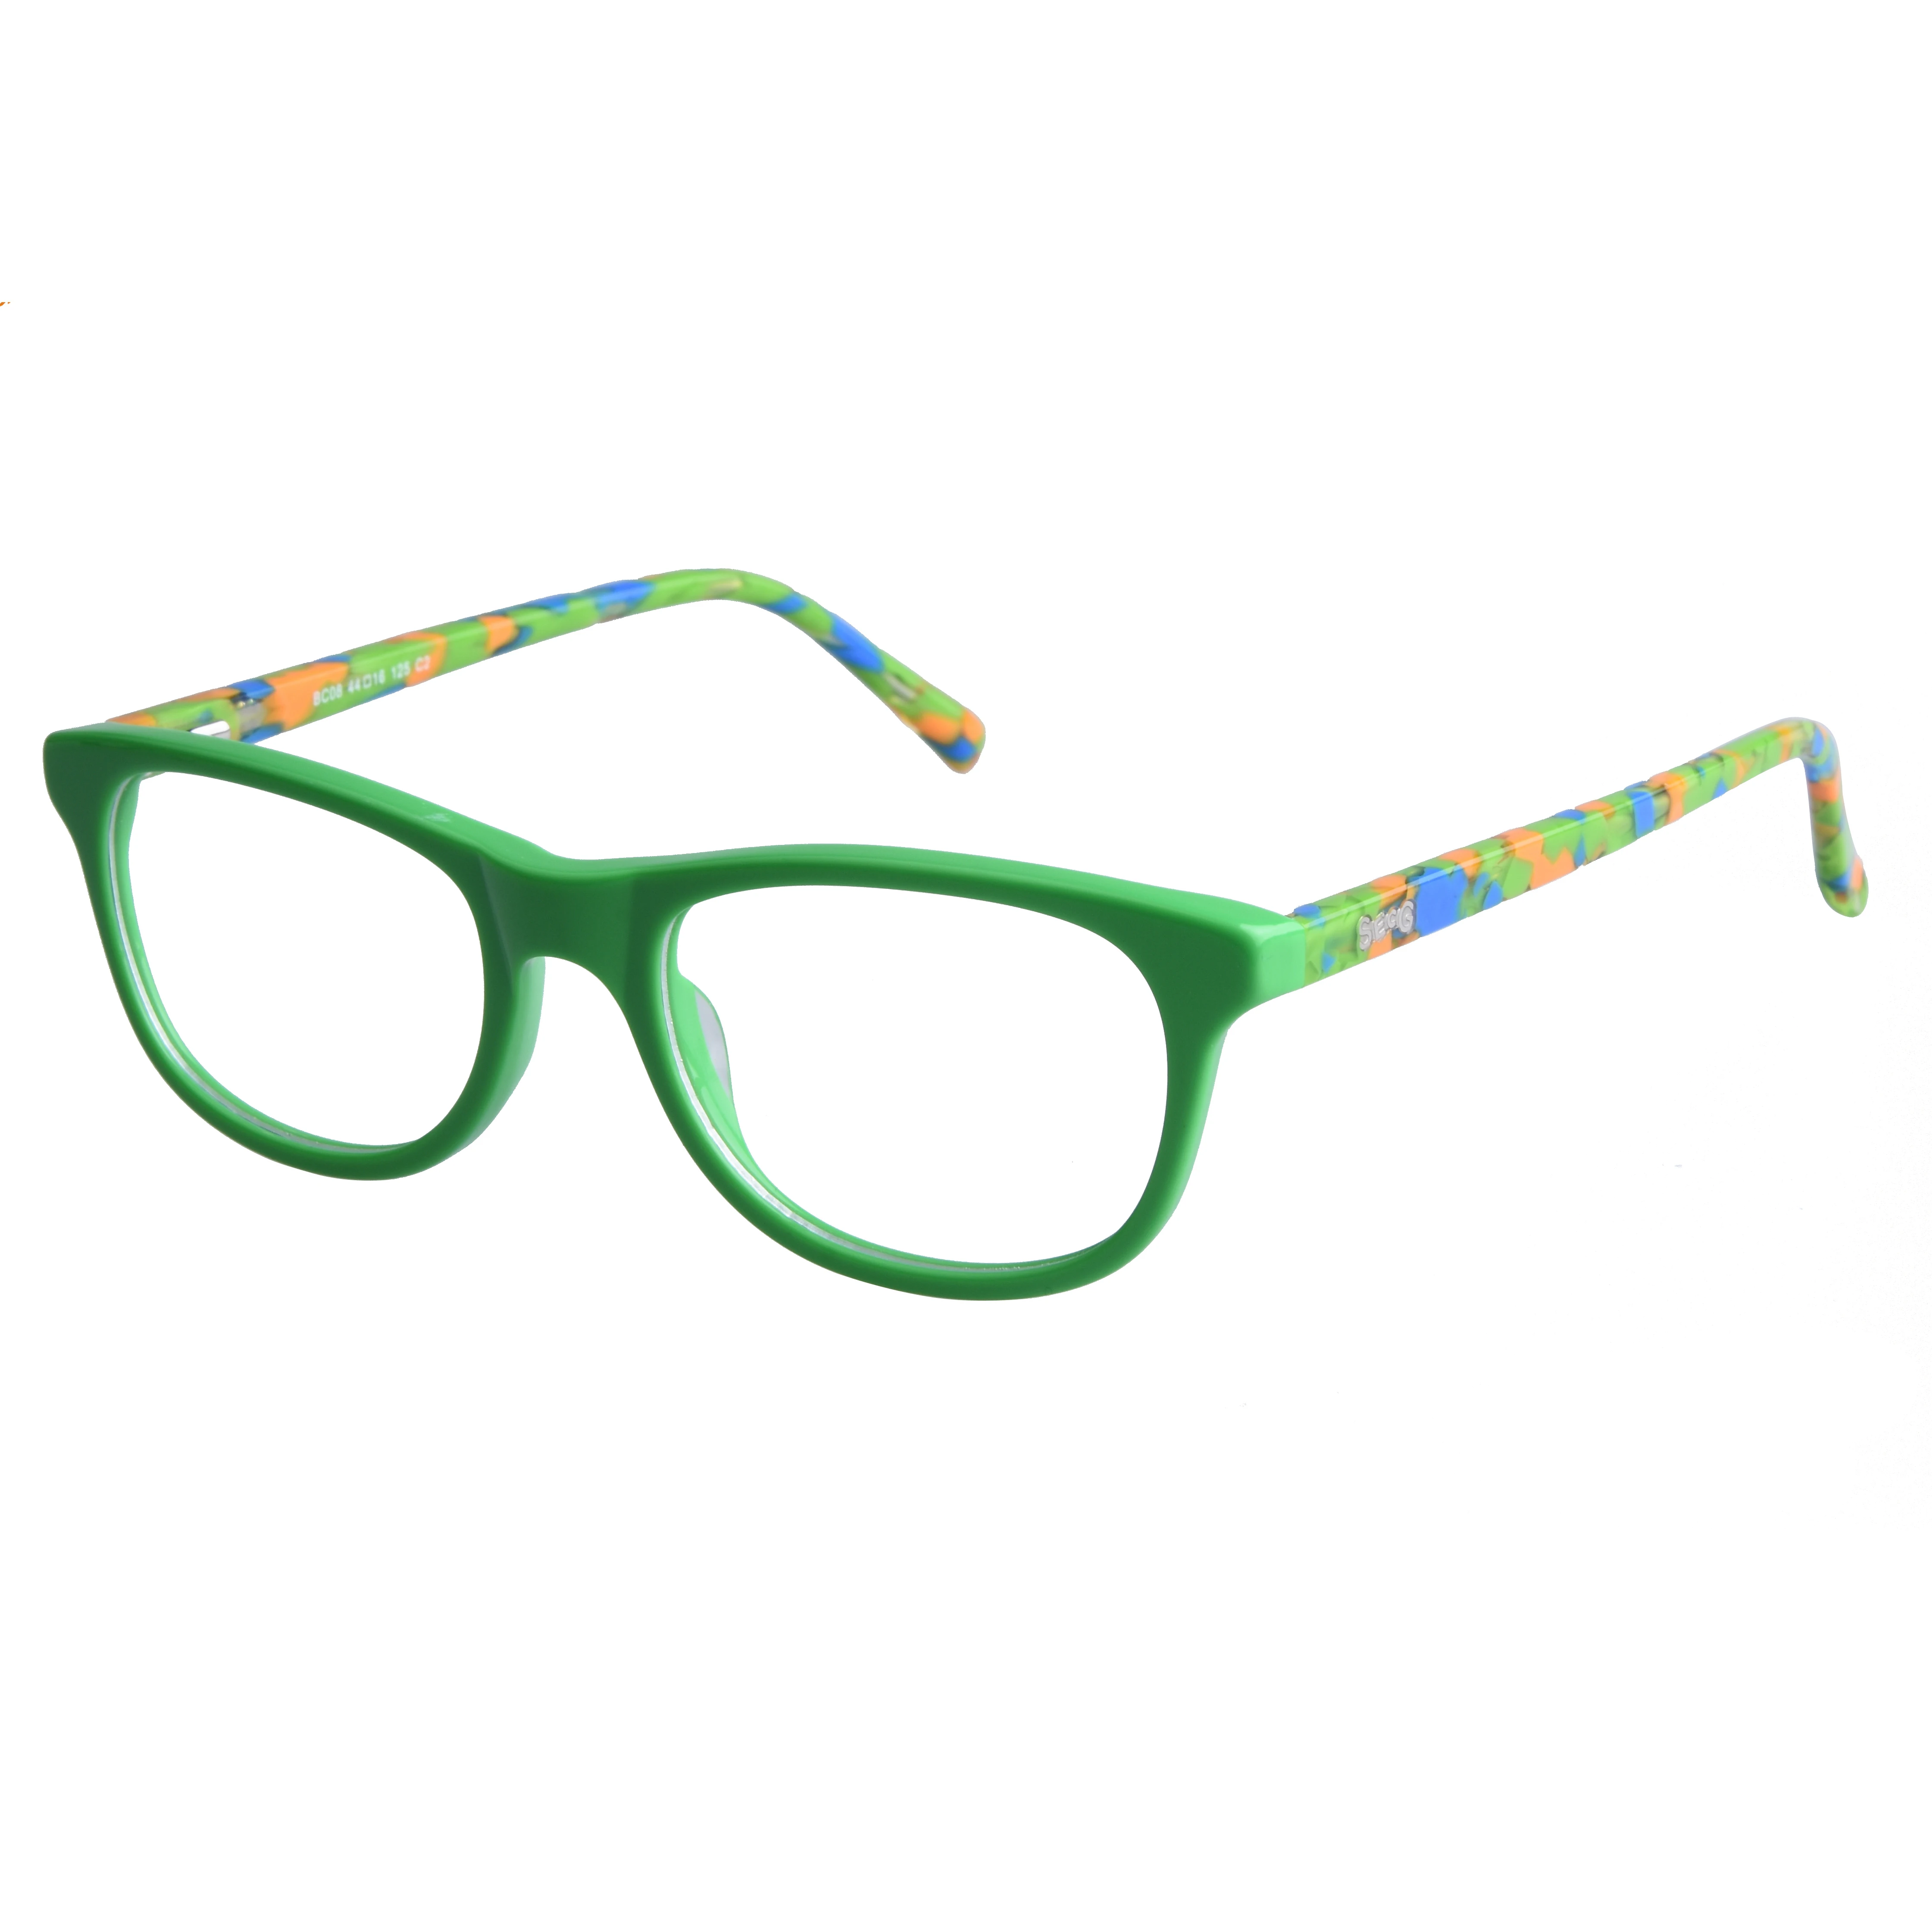 2019 New Kids Acetate Glasses Frames, Square Eyeglasses Frame